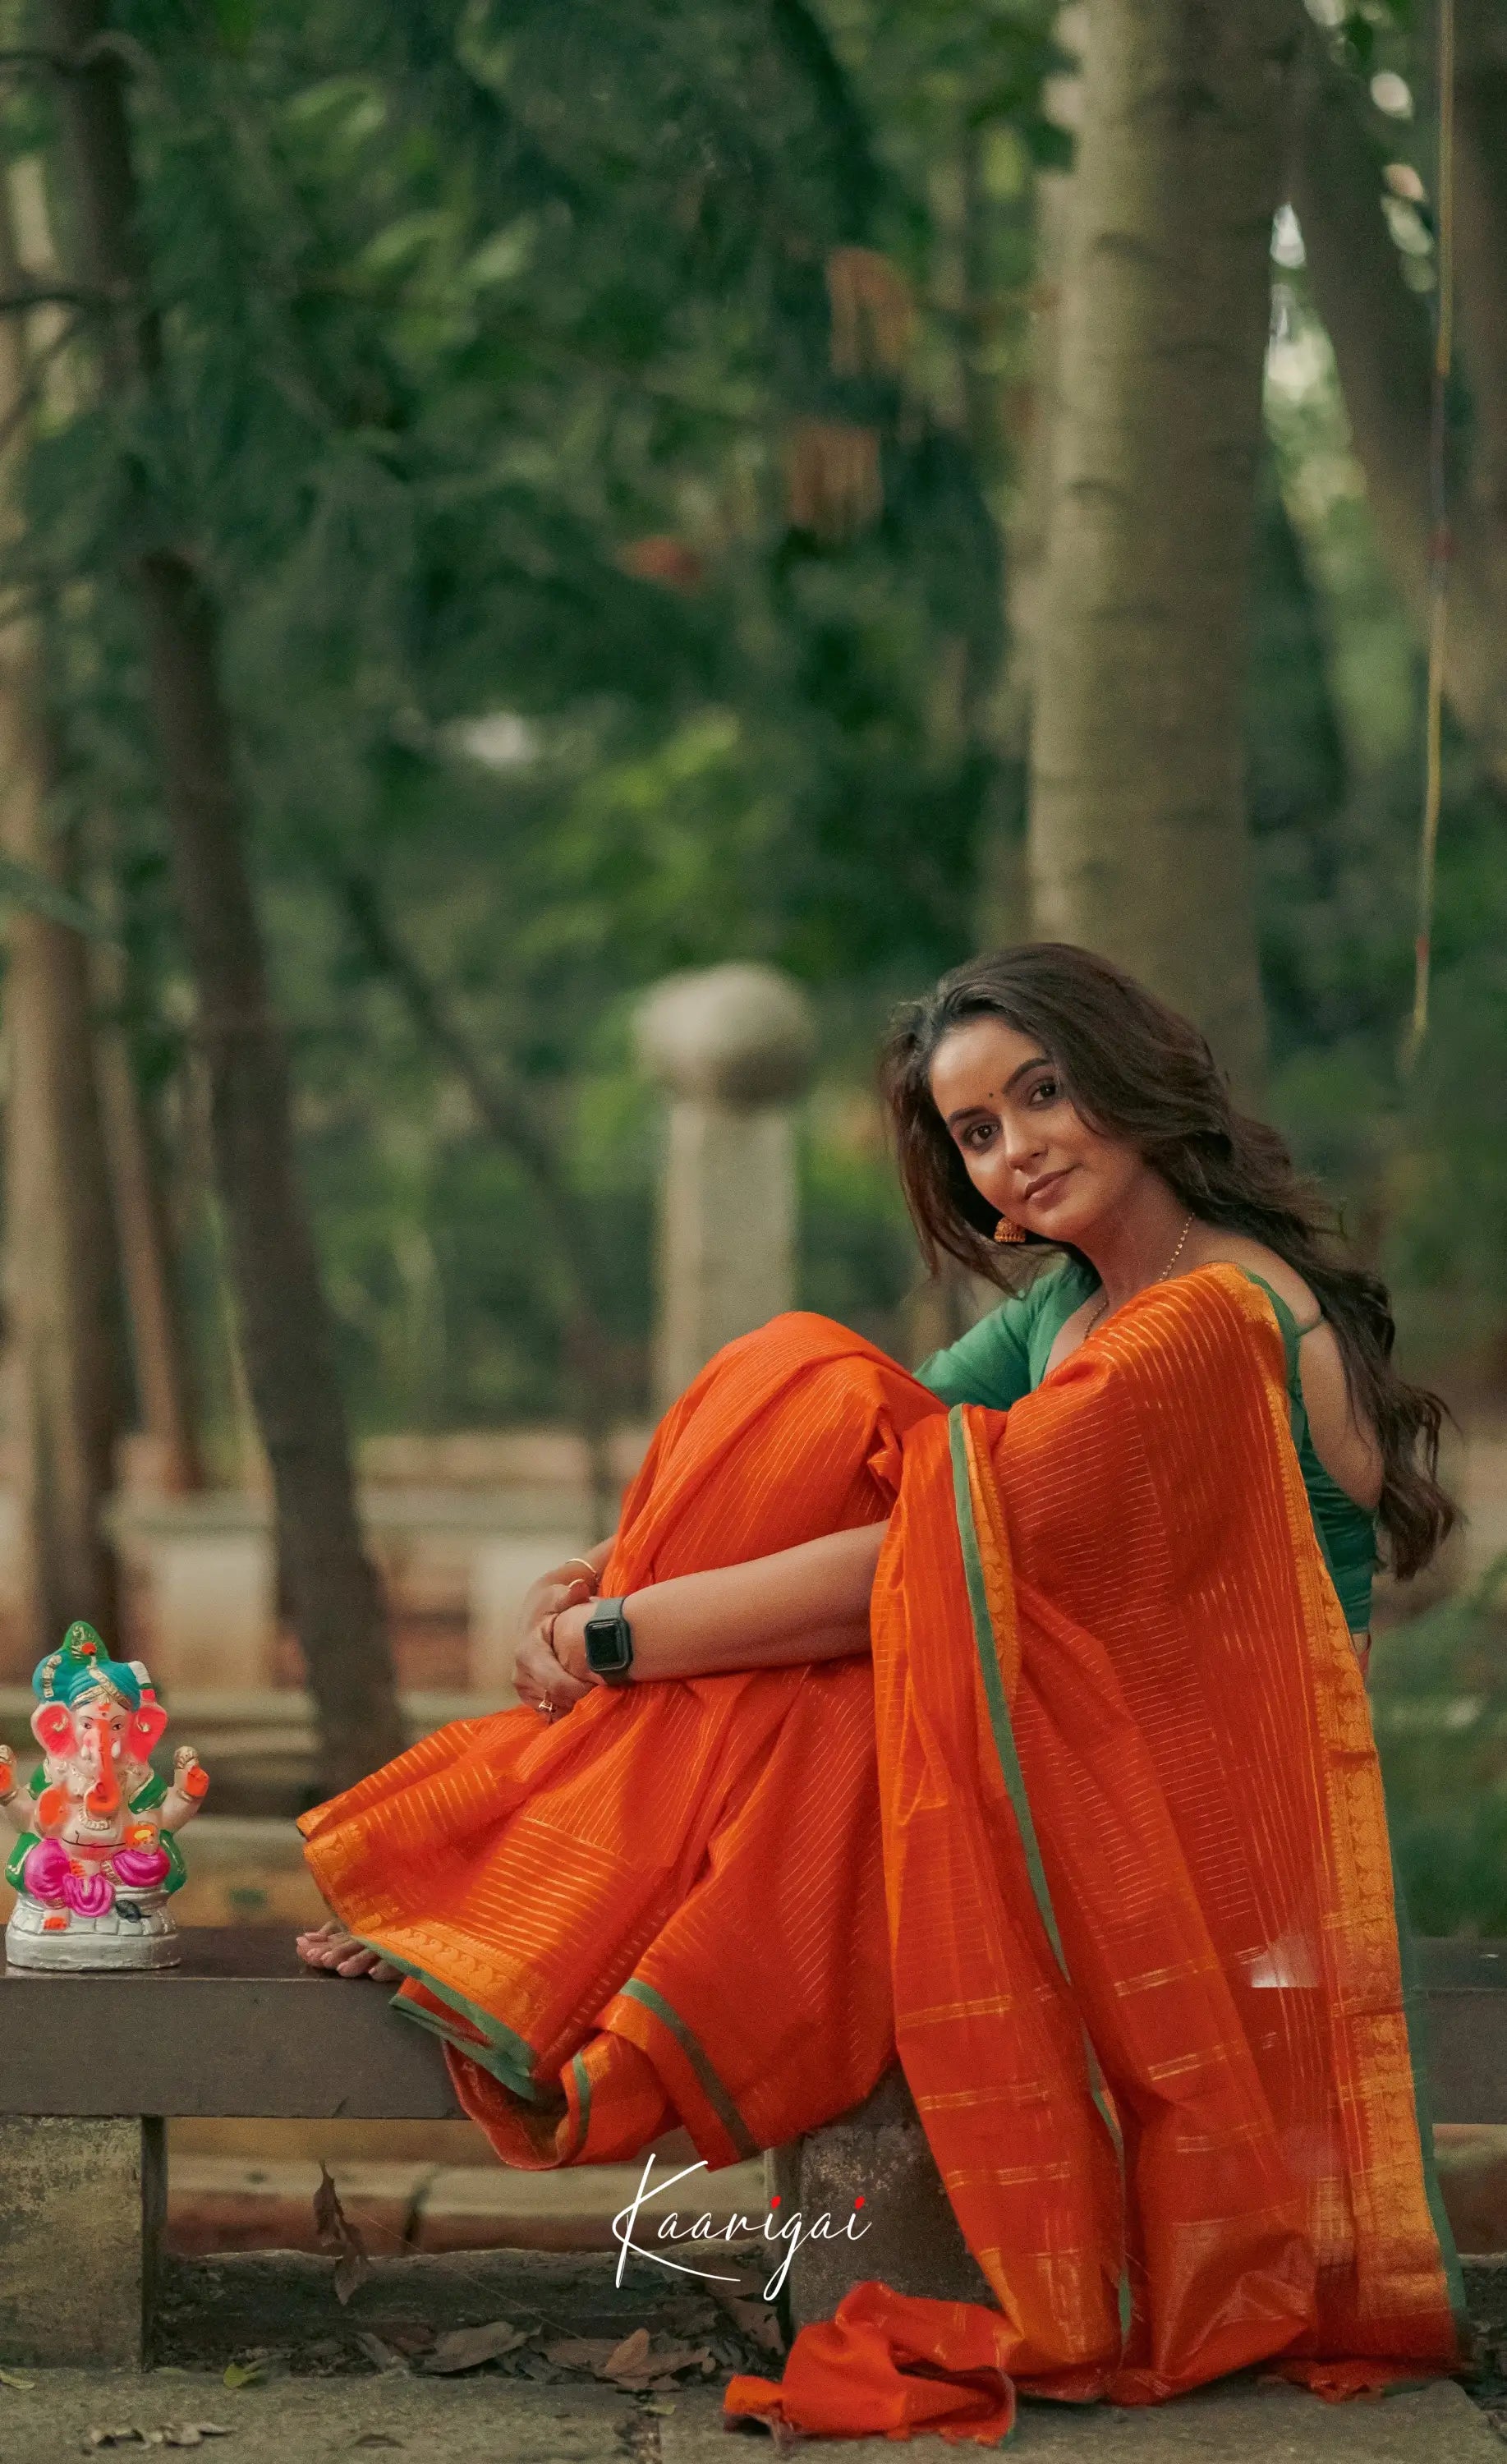 Kamakshi - Shade Of Orange And Green Tone Kanchi Cotton Saree Sarees